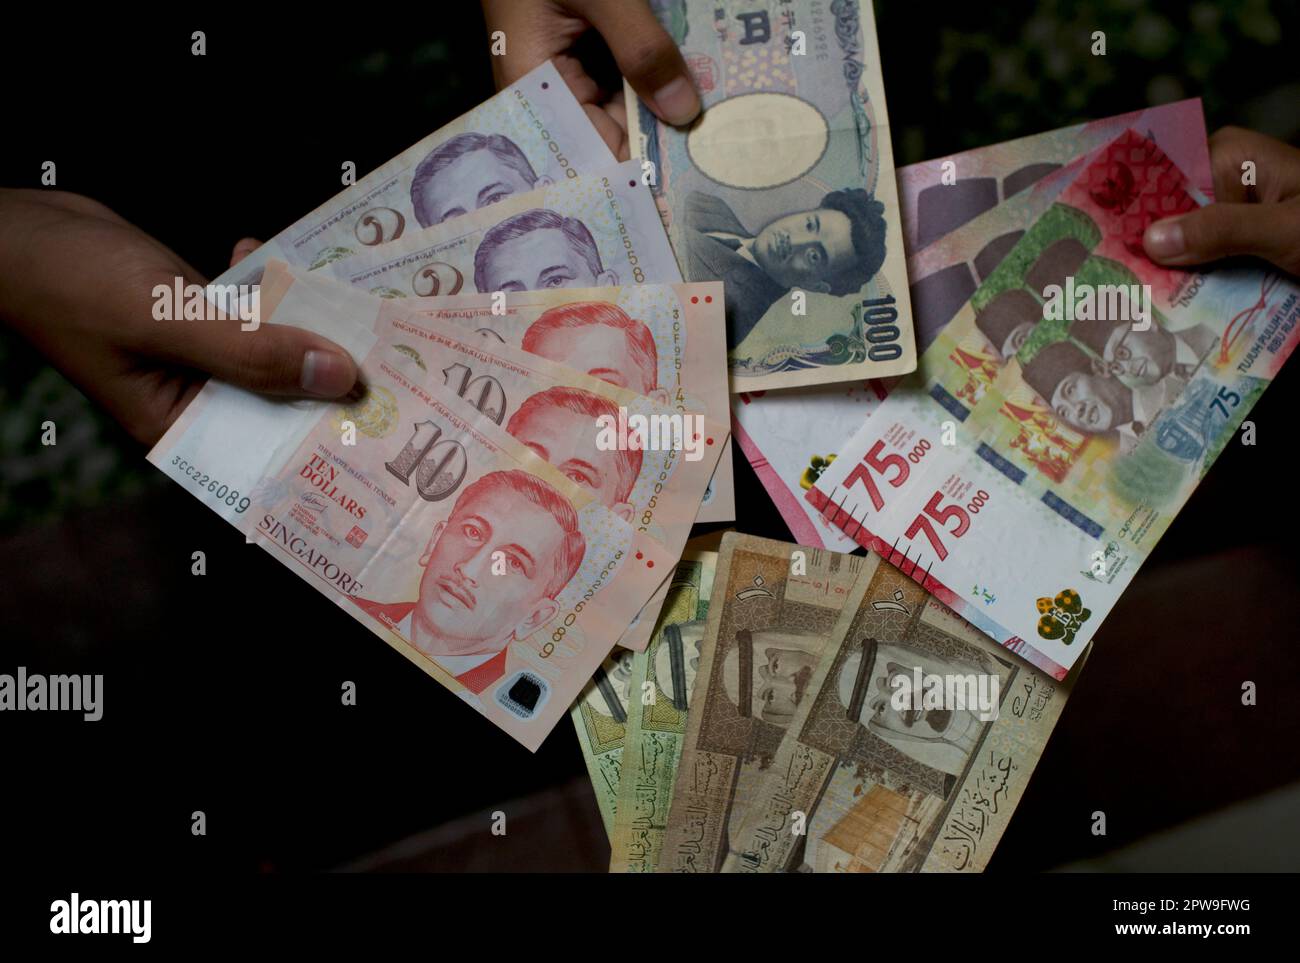 Asiatisches Kind, das indonesische Rupien, Singapur-Dollar, Saudi-Arabien-Rial und Japan-Yen-Geld hält, oberflächliche Konzentration Stockfoto